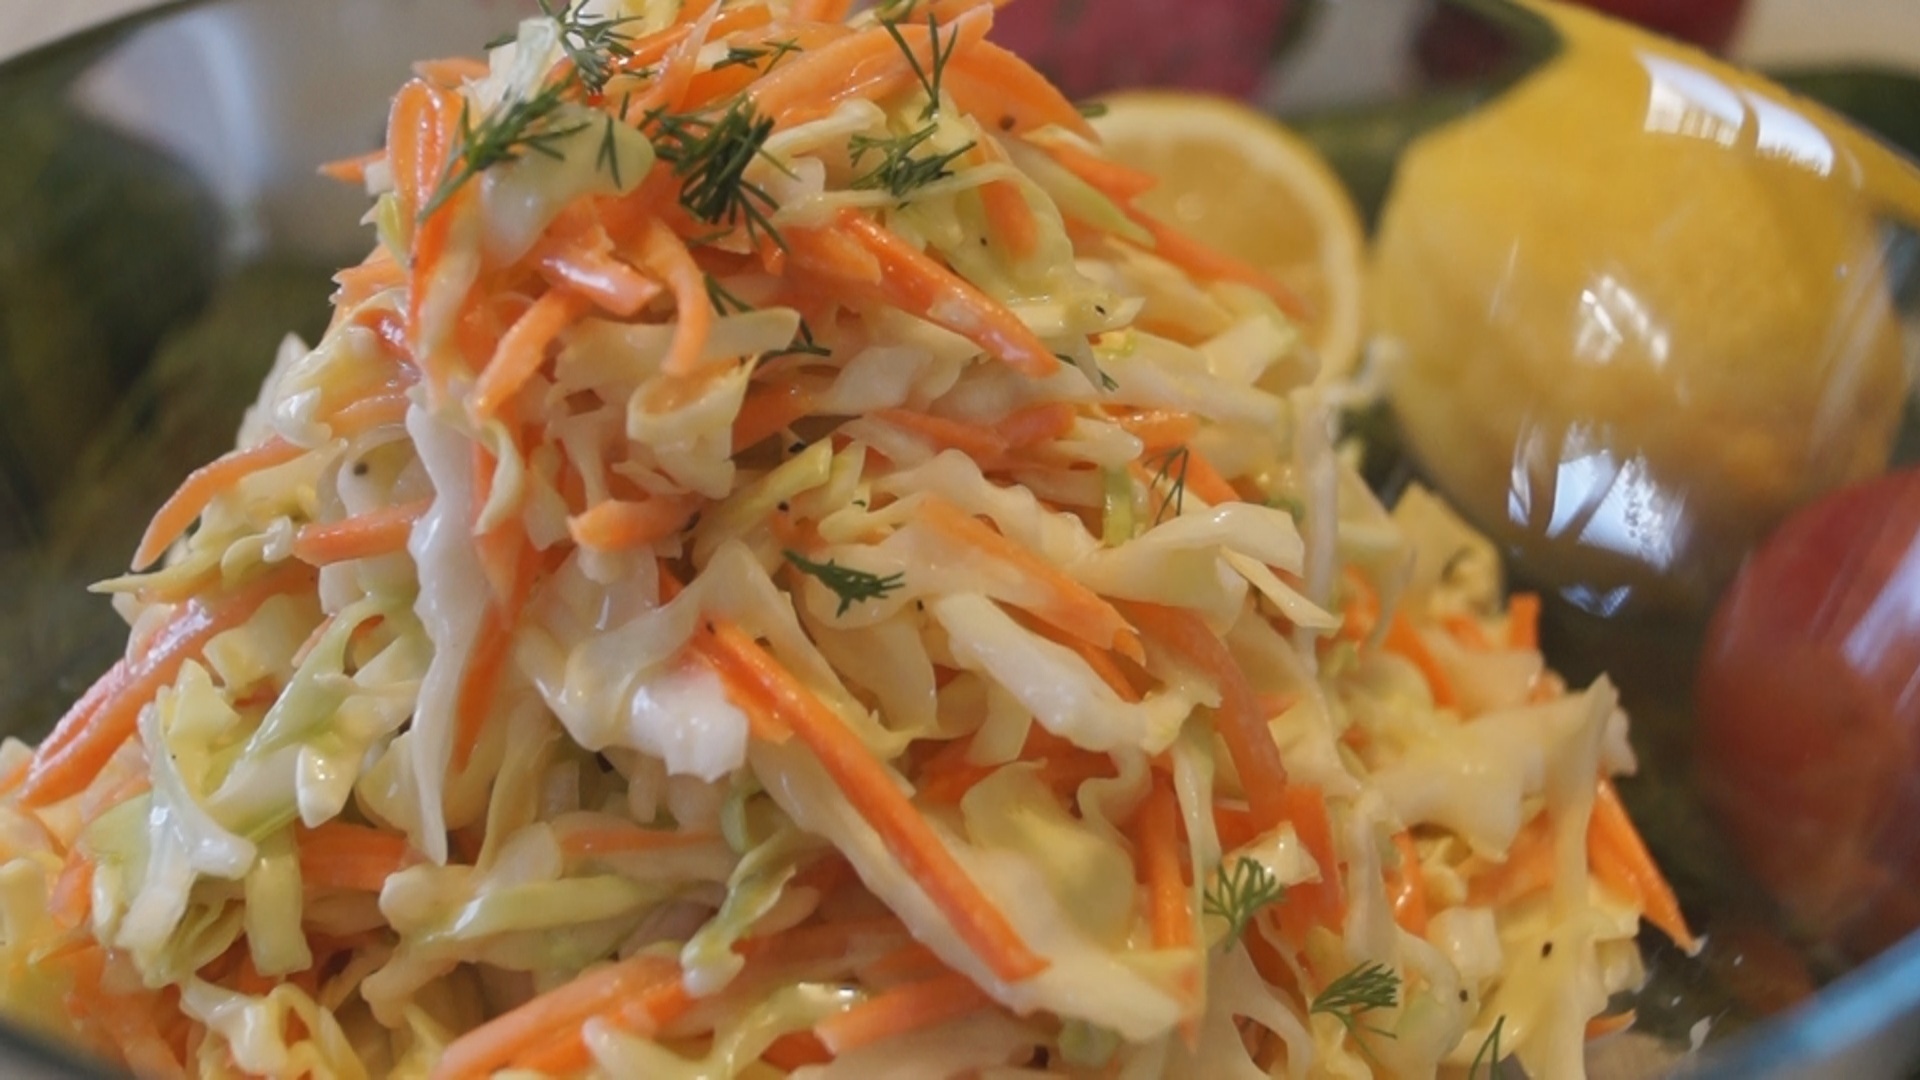 Салат коул слоу. самый вкусный капустный салат! - пошаговый рецепт с фото